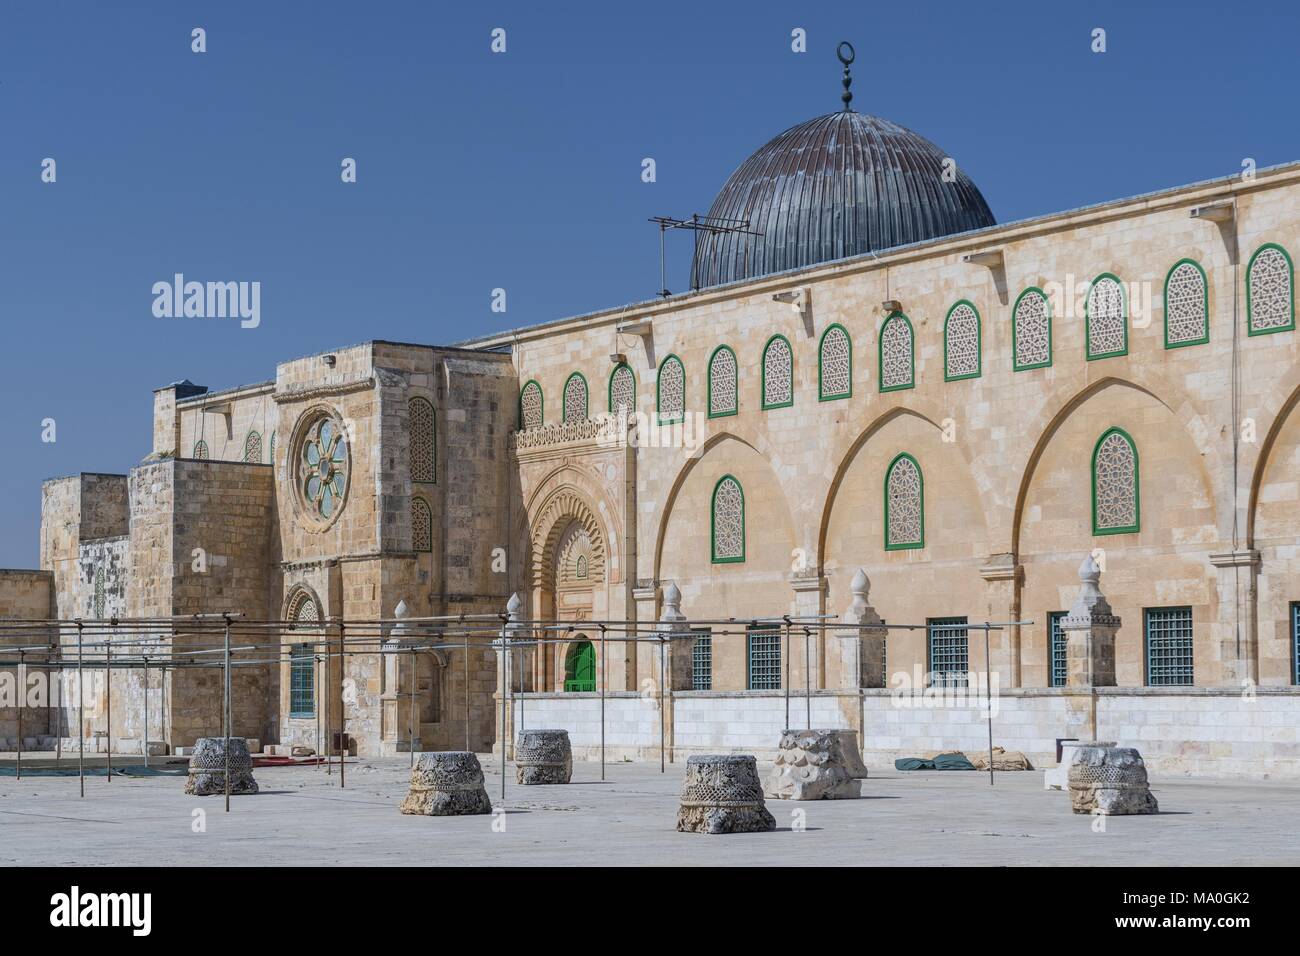 Le culte islamique de la mosquée El Aksa au Mont du Temple (le noble sanctuaire) à Jérusalem-Est, Israël. Banque D'Images